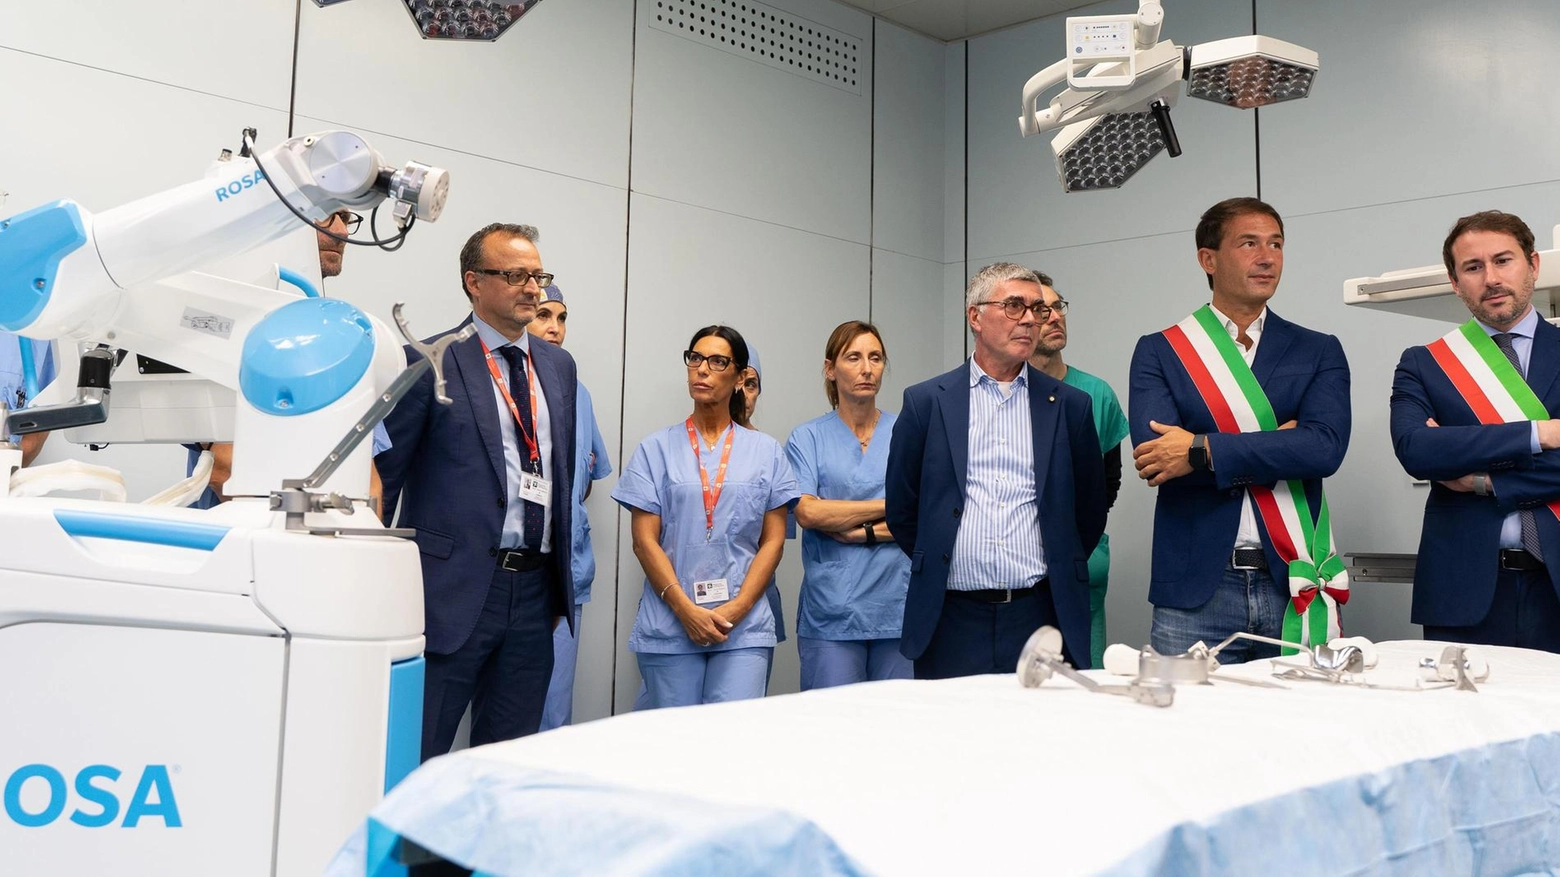 Dottor robot in sala operatoria il primo in un ospedale lombardo